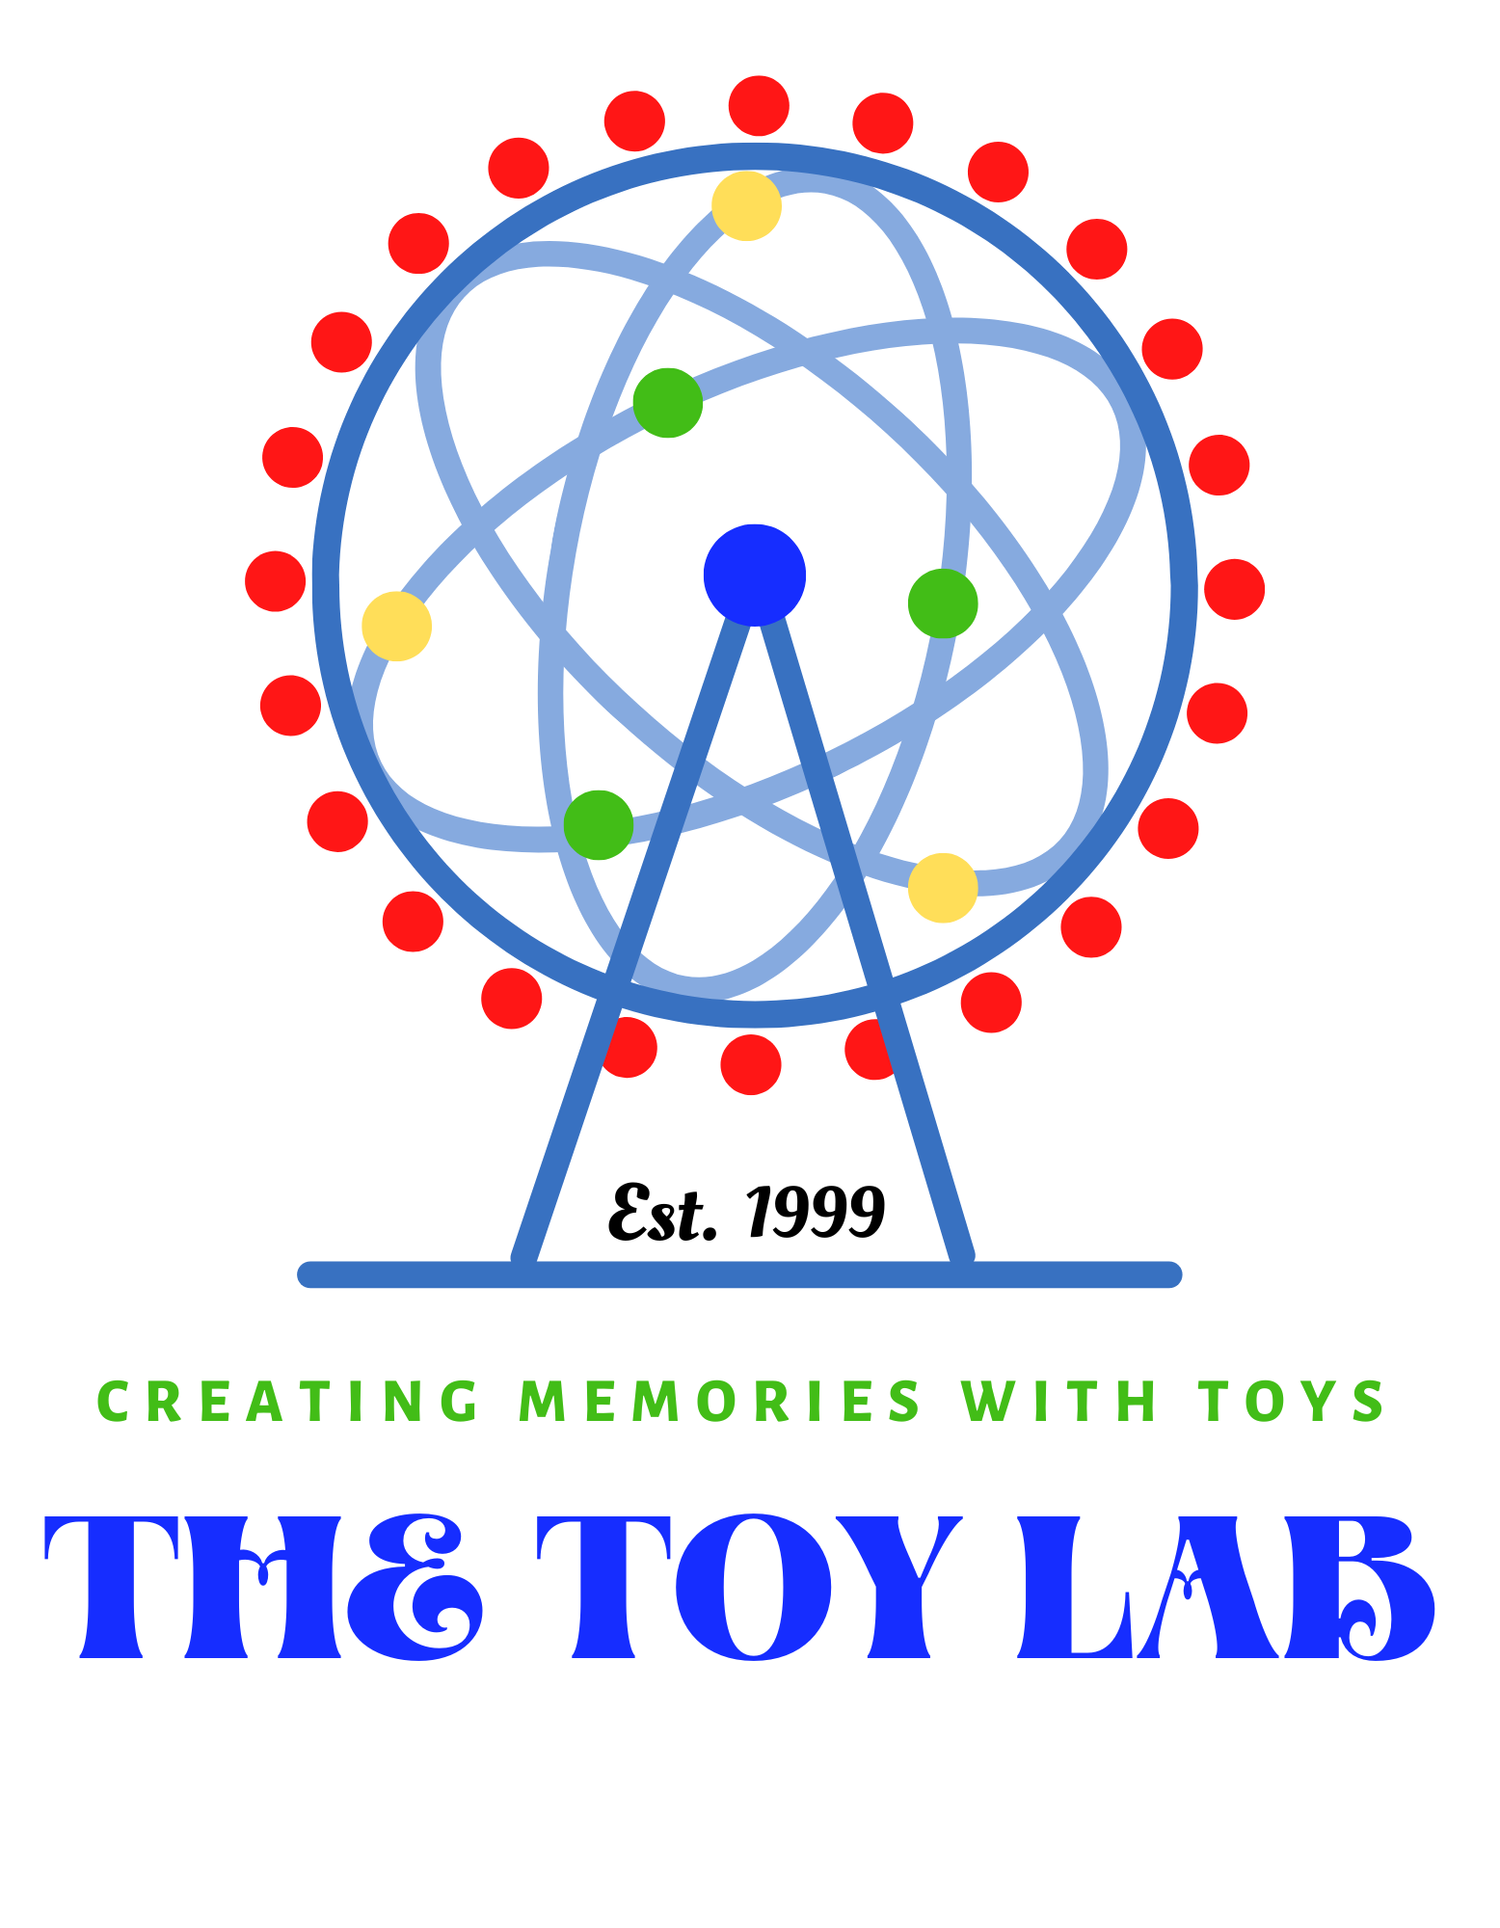 Toy Lab